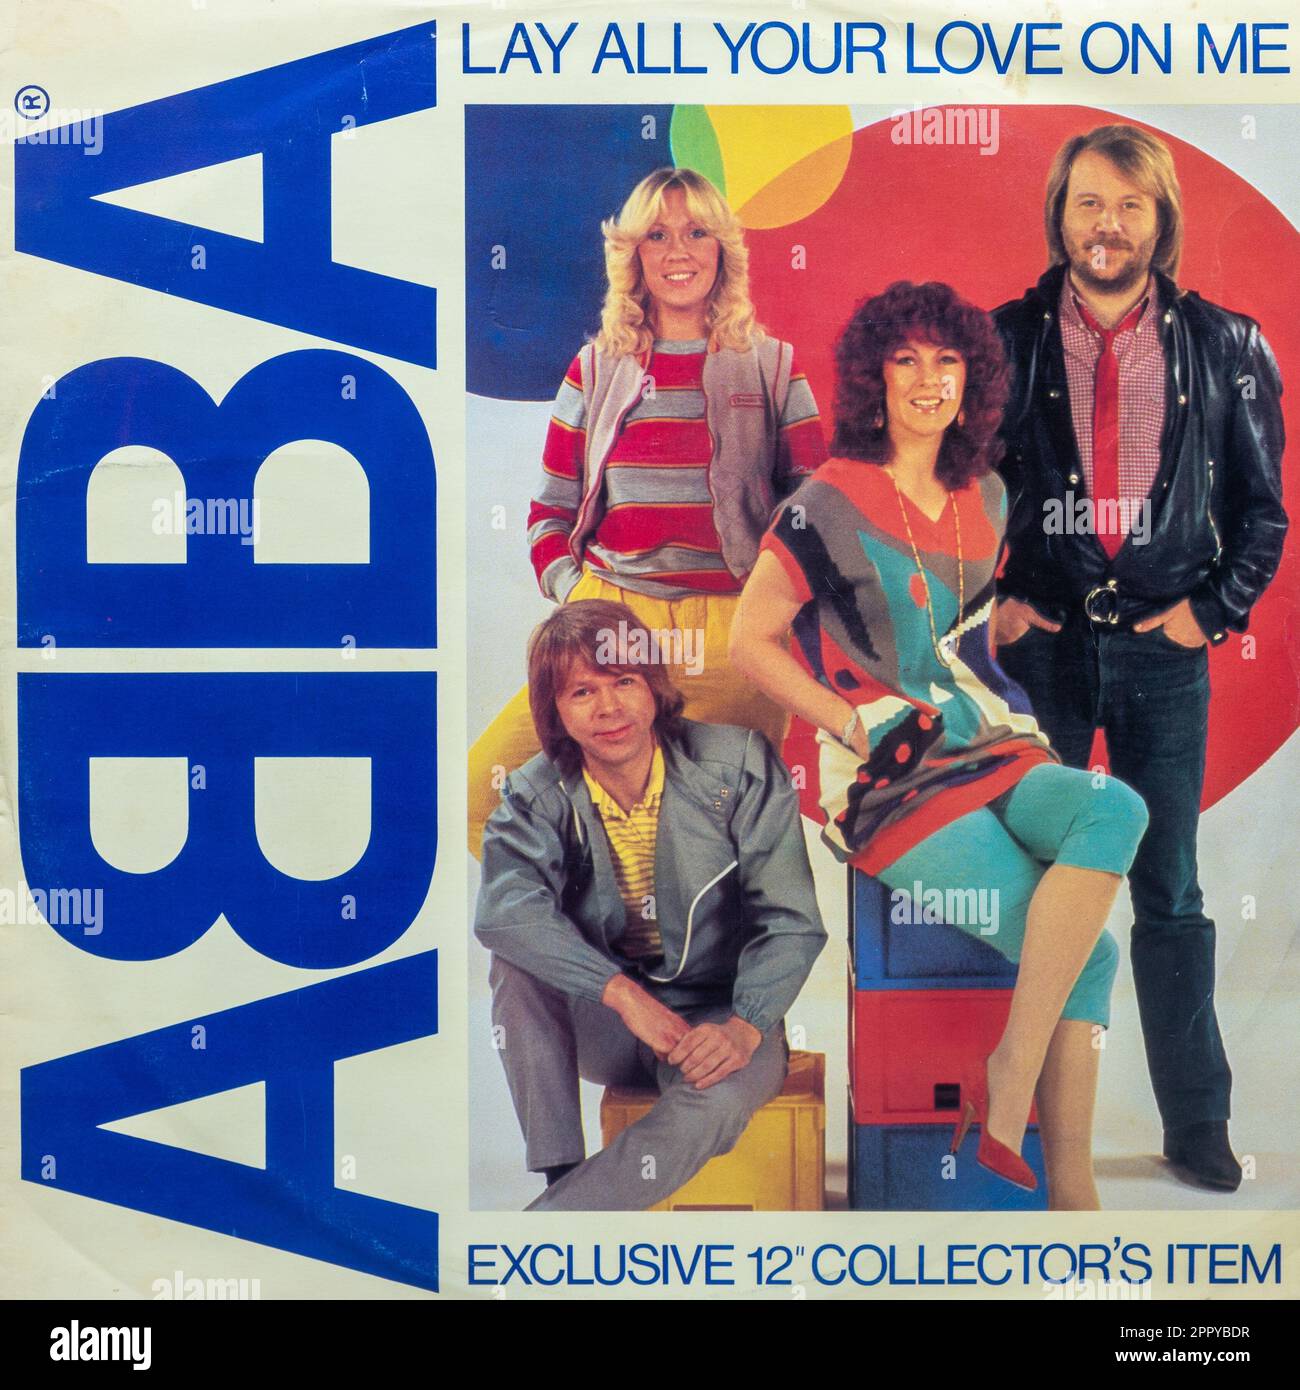 Déposez tout votre amour sur moi couverture de disque en vinyle par Abba, groupe pop suédois Banque D'Images